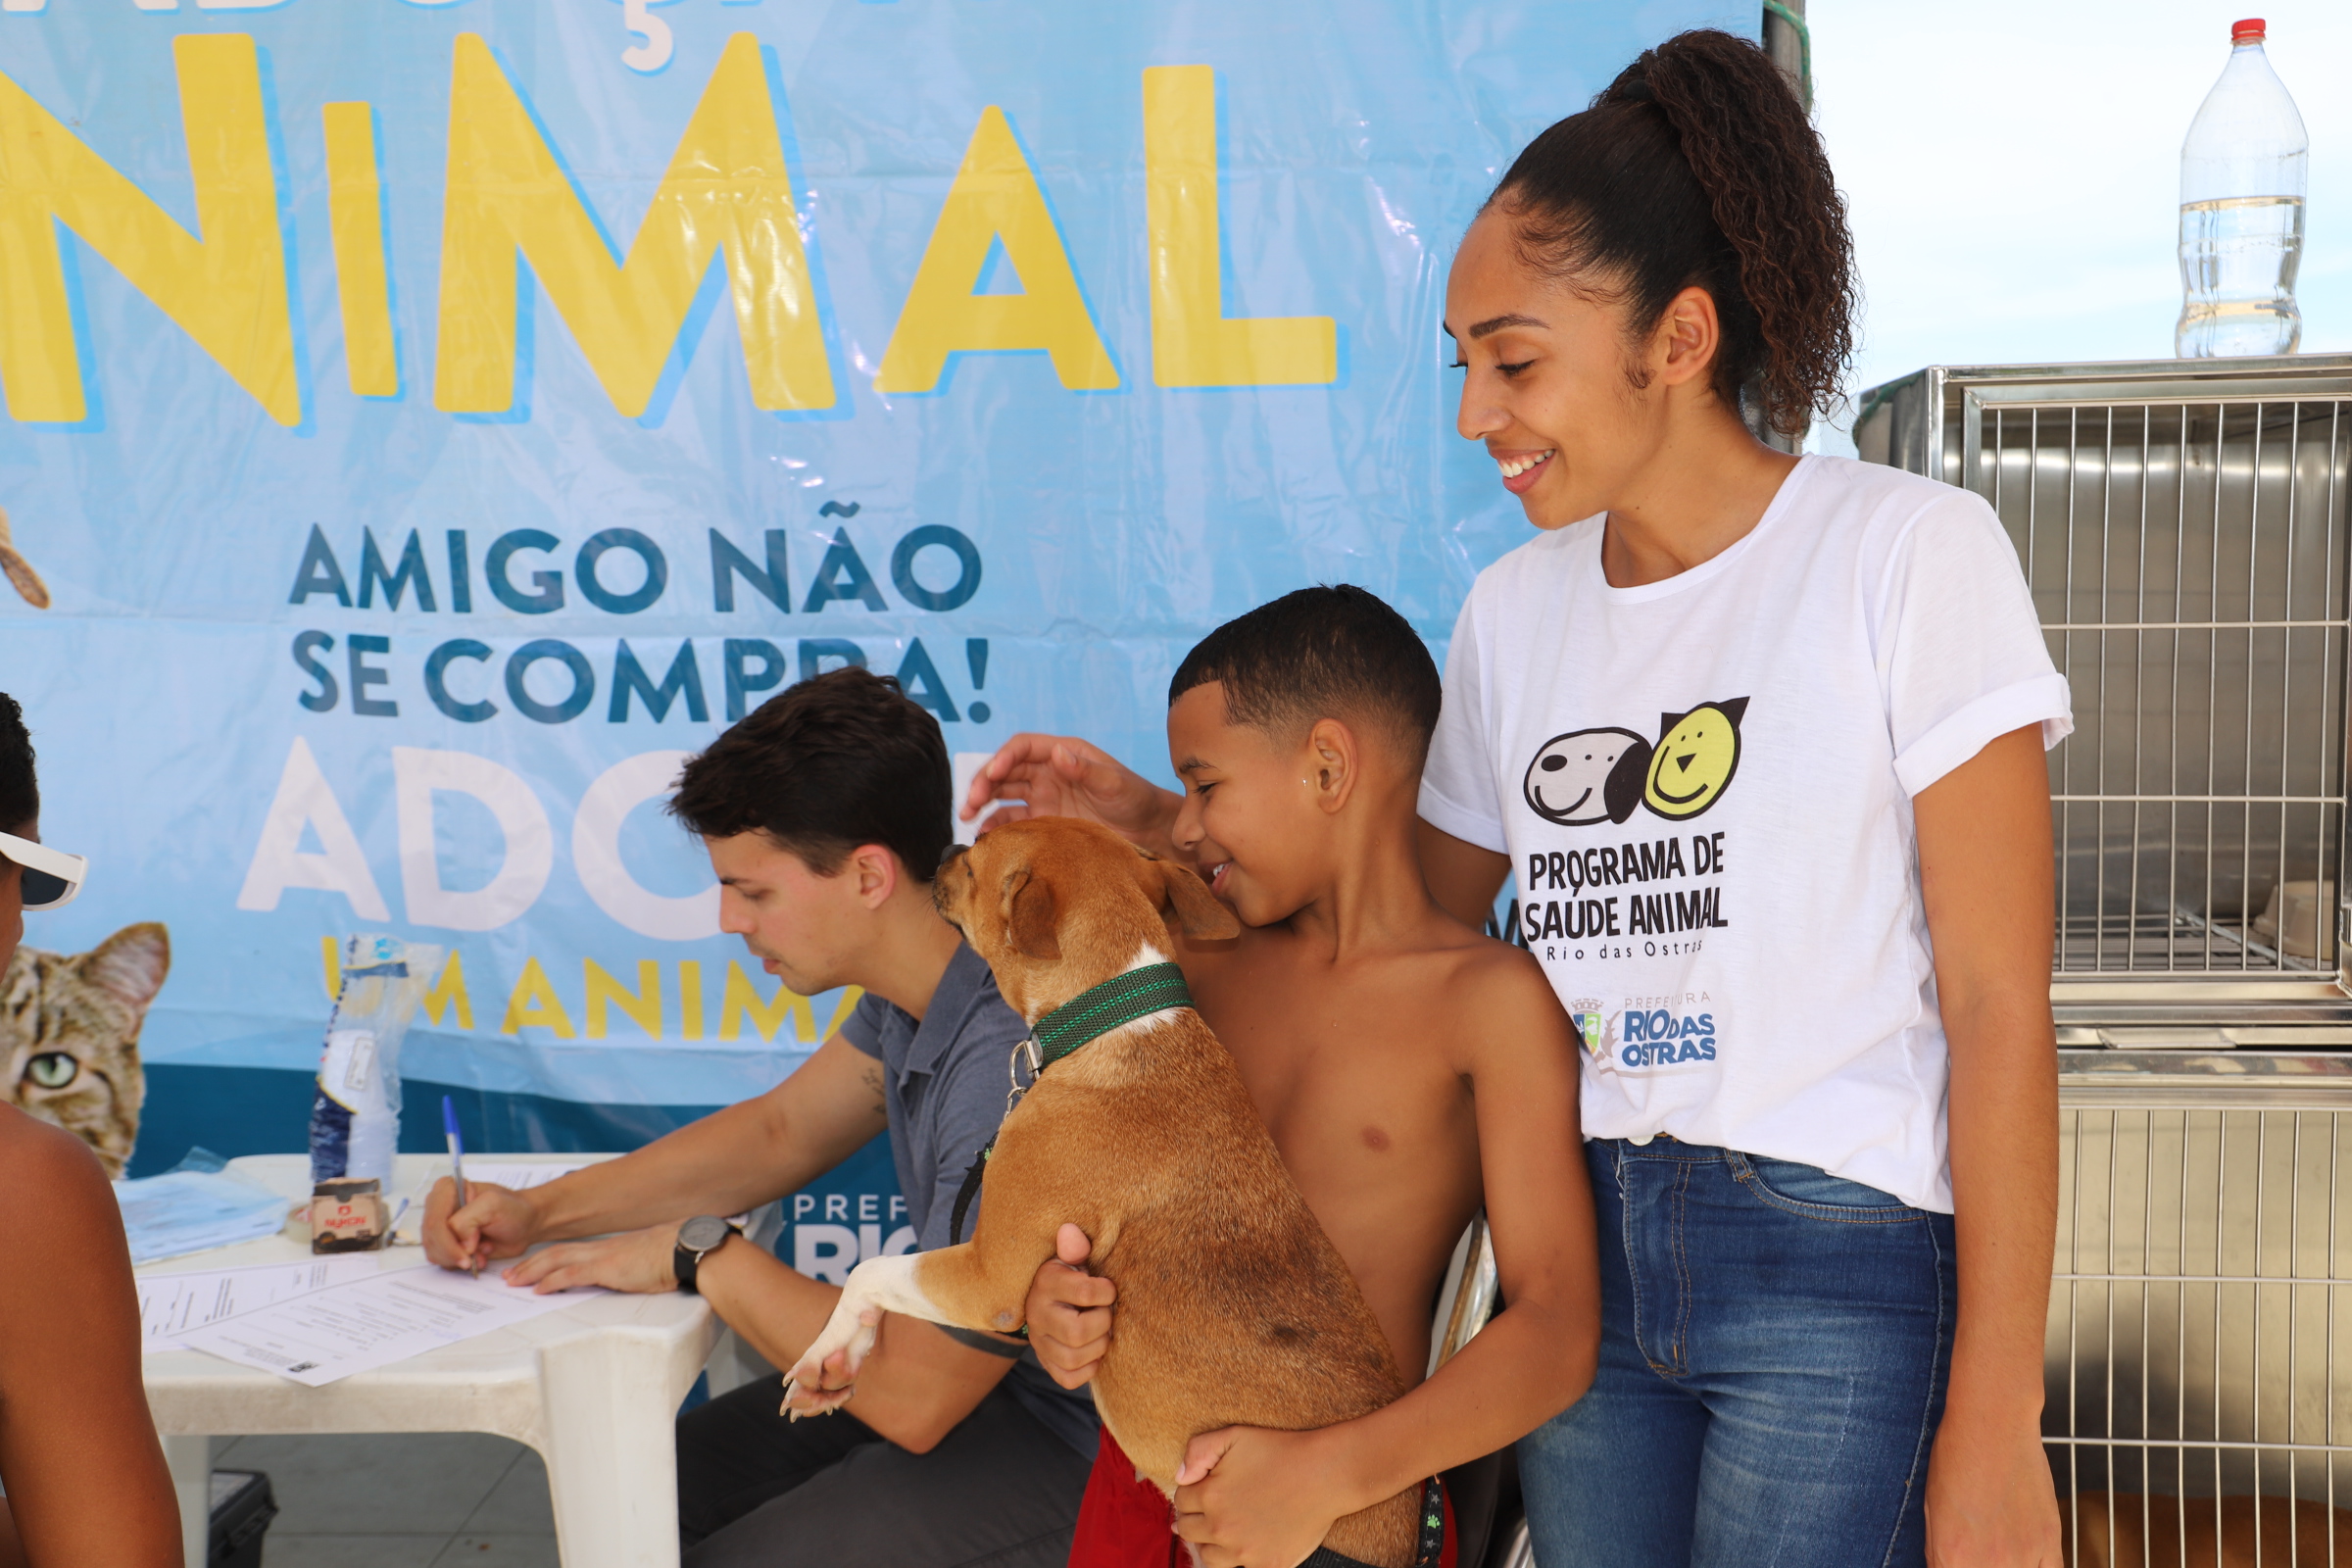 Feira de Adoção Animal será na próxima quinta, em Rio das Ostras 